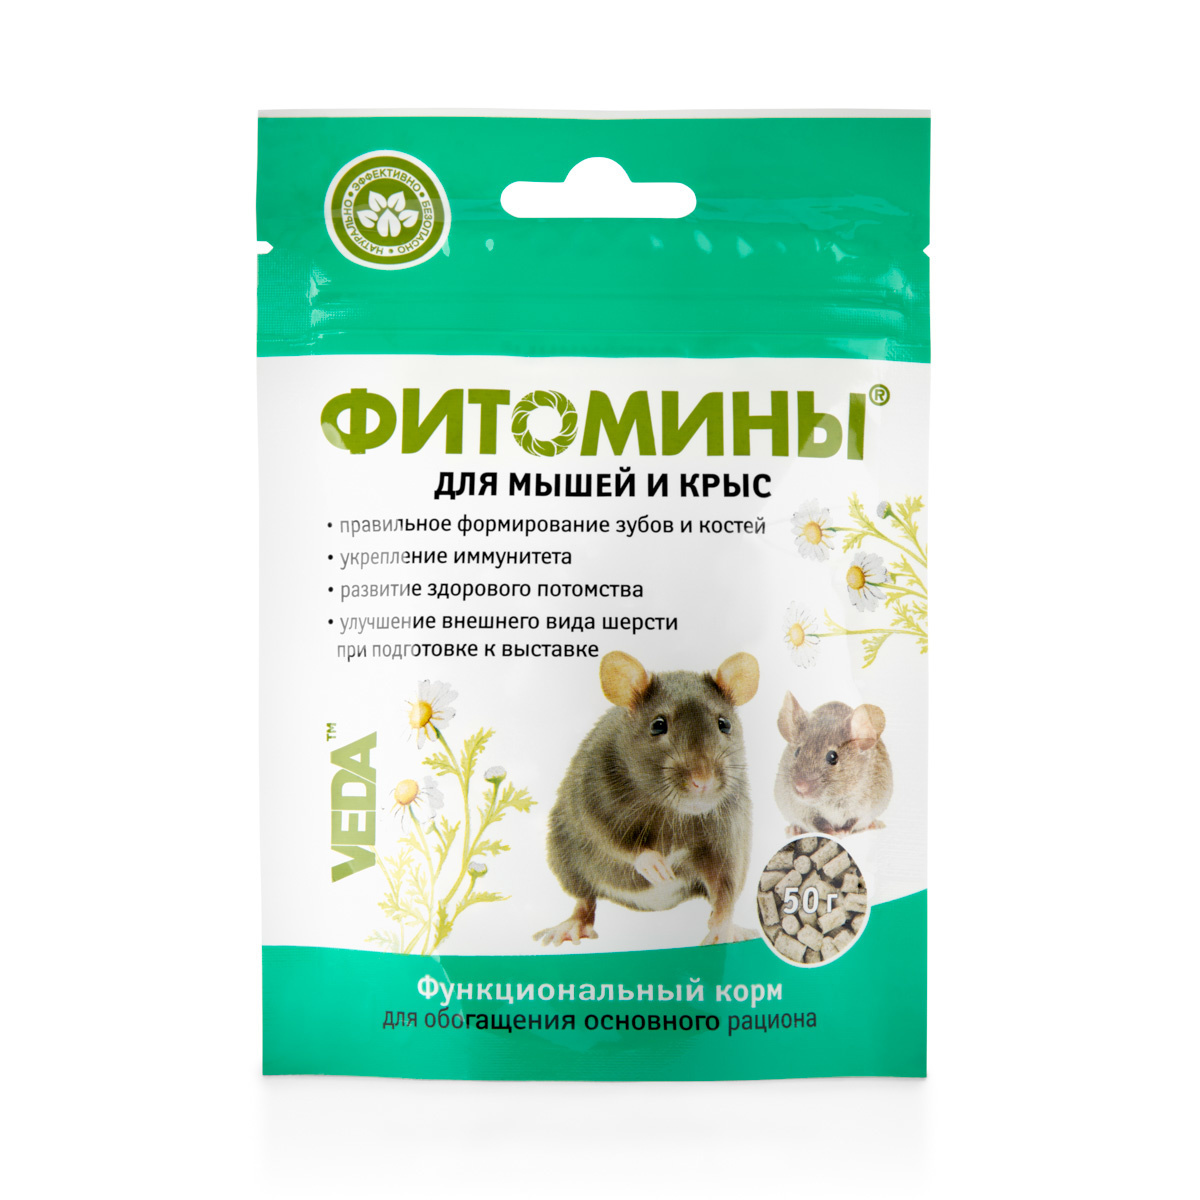 Веда фитомины  для мышей и крыс (50 г) Веда фитомины  для мышей и крыс (50 г) - фото 1